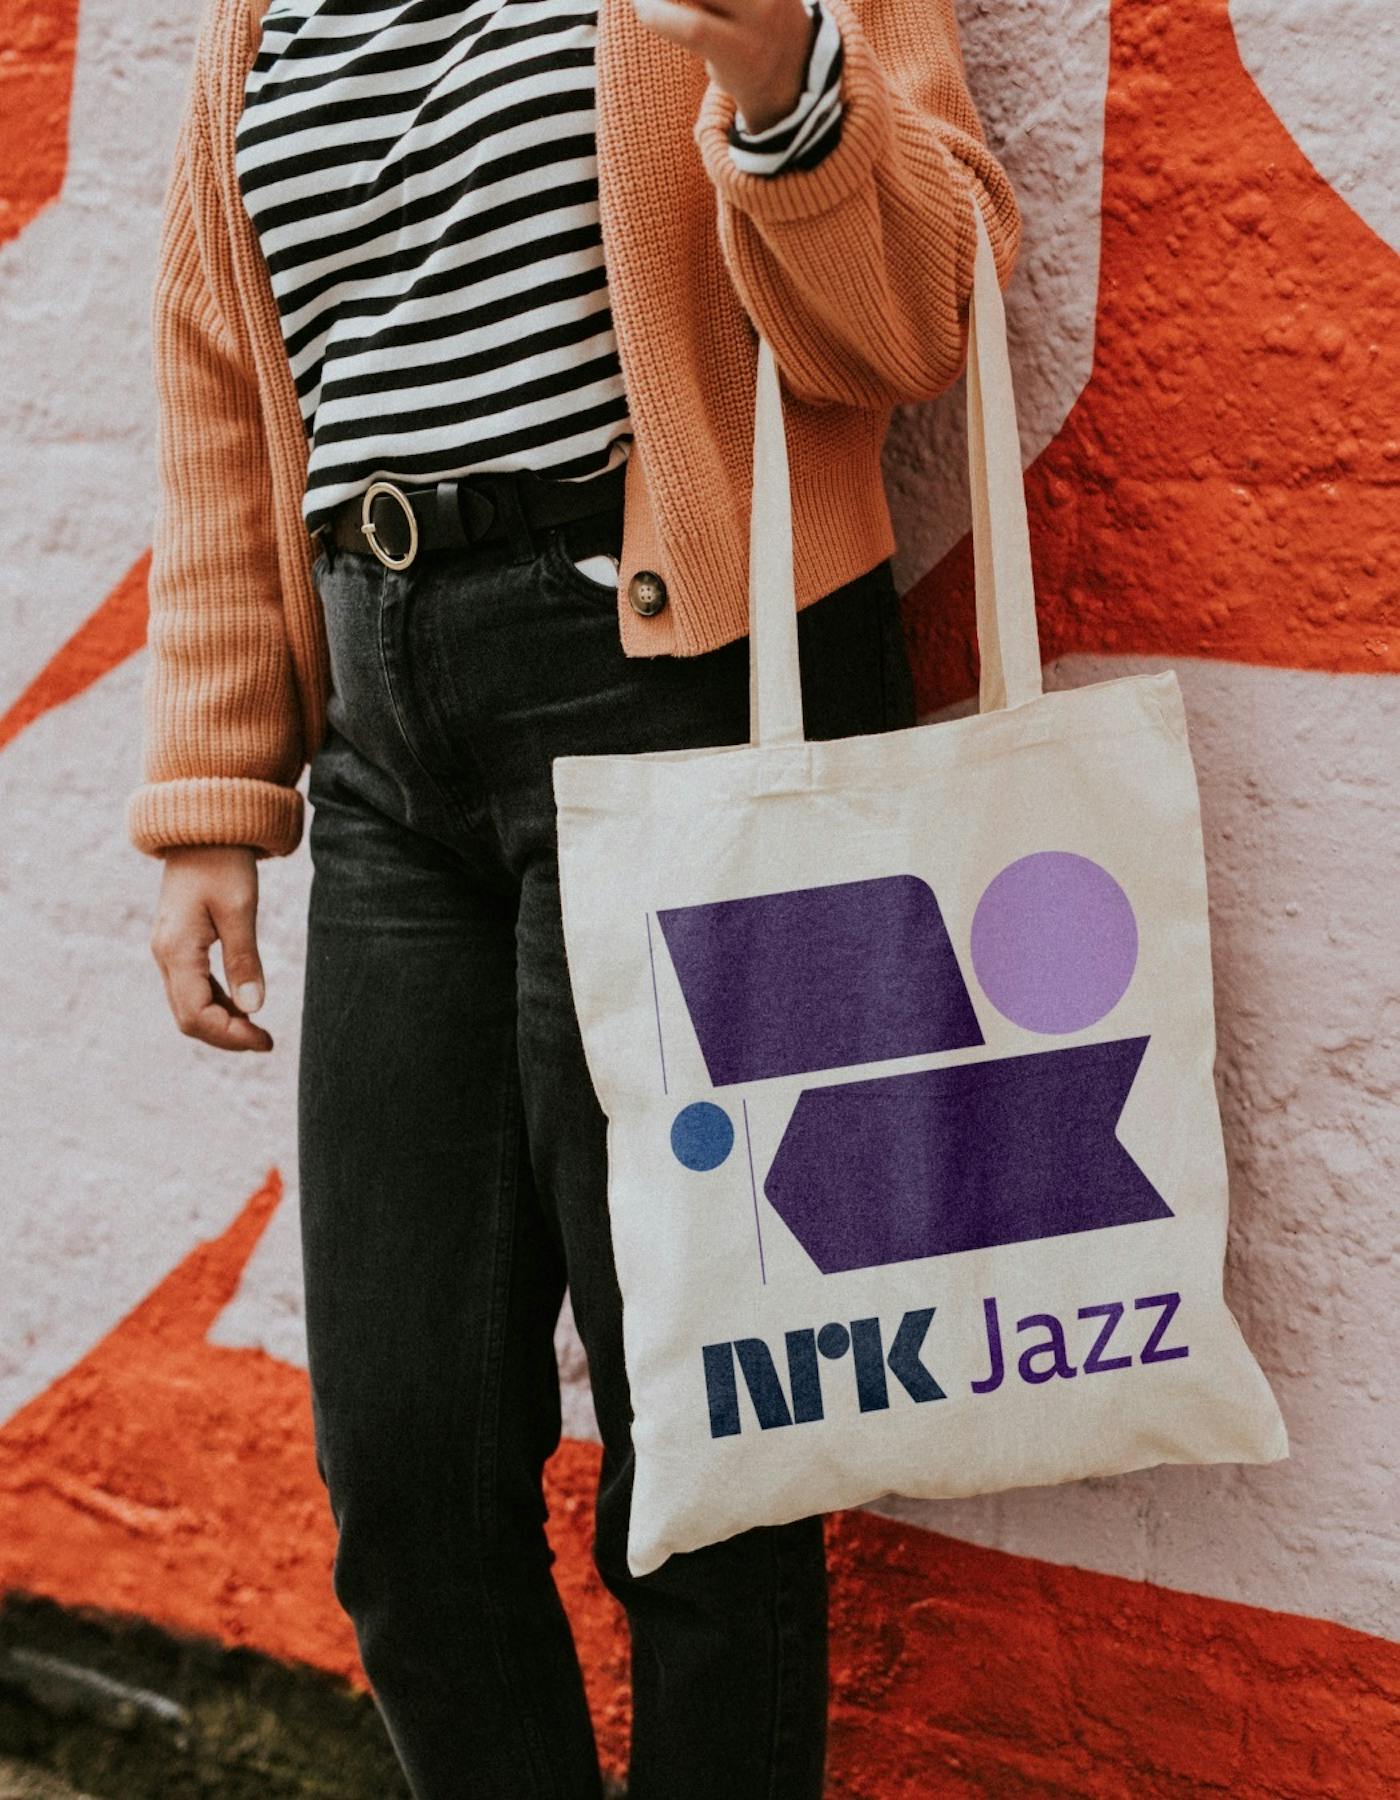 NRK Jazz tote